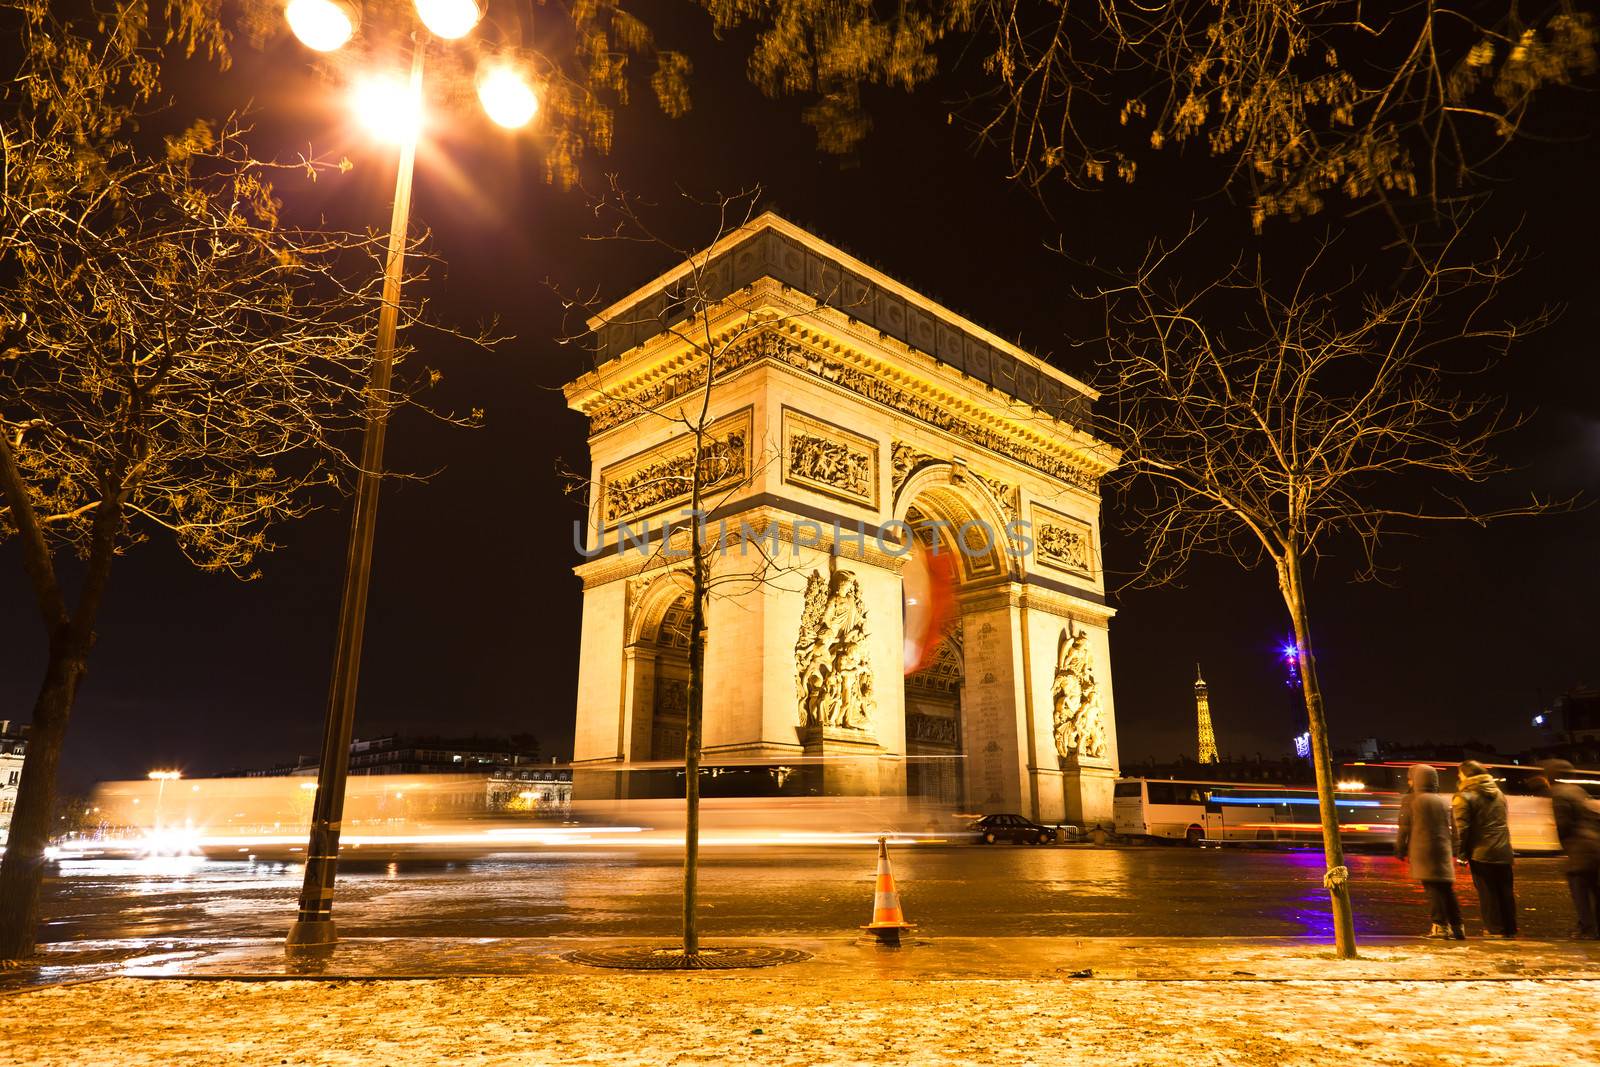 The Arc de Triomphe in Paris illuminated at night. 

